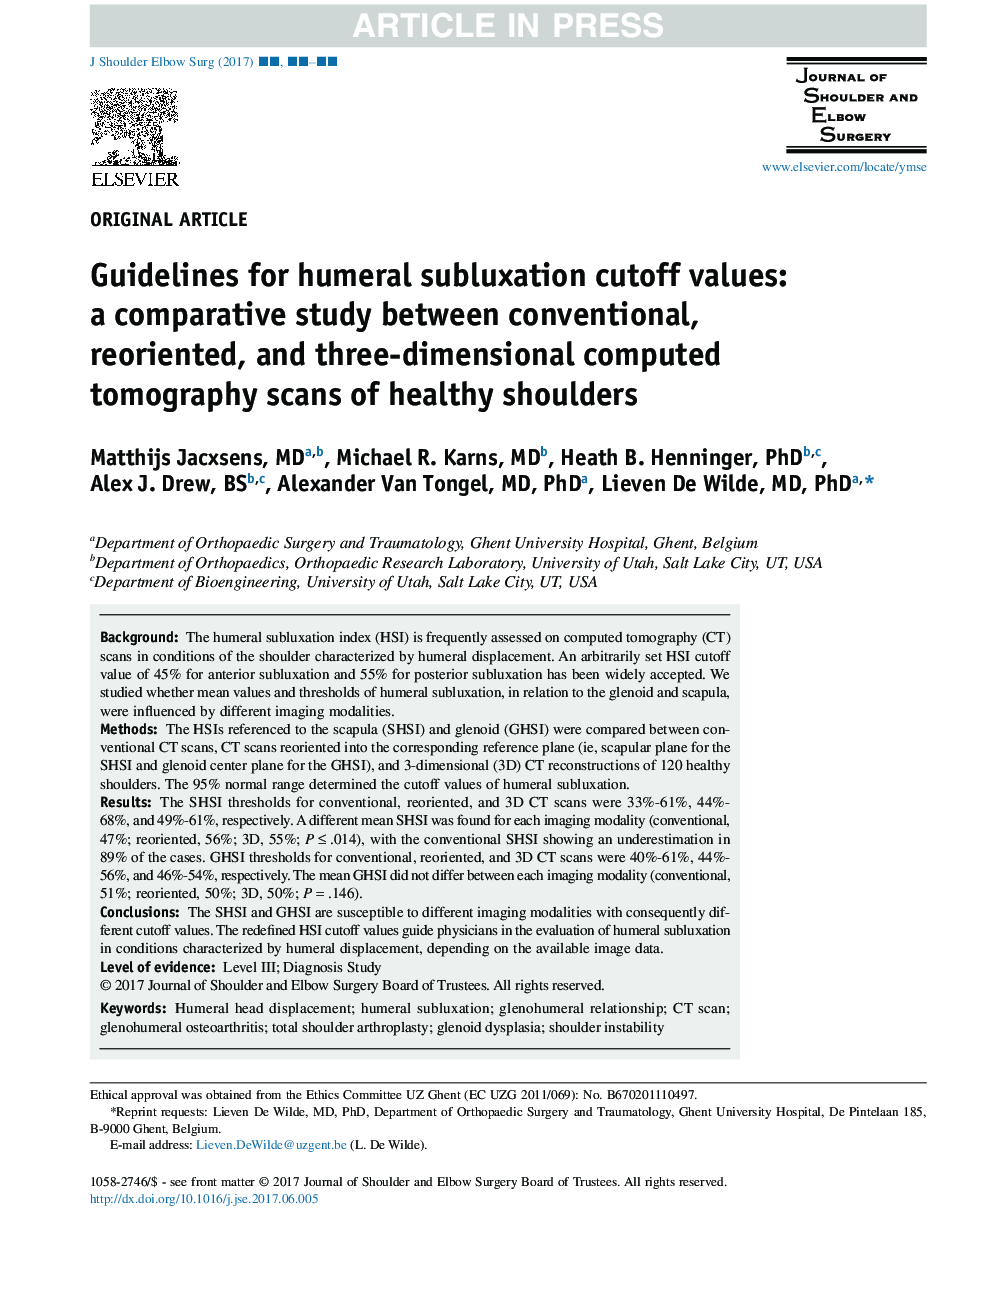 رهنمود های مقایسهای مقادیر کمالواکسون مفصلی: یک مطالعه تطبیقی ​​بین اسکن سی تی اسکن متعارف، مجدد و سه بعدی شانه های سالم 